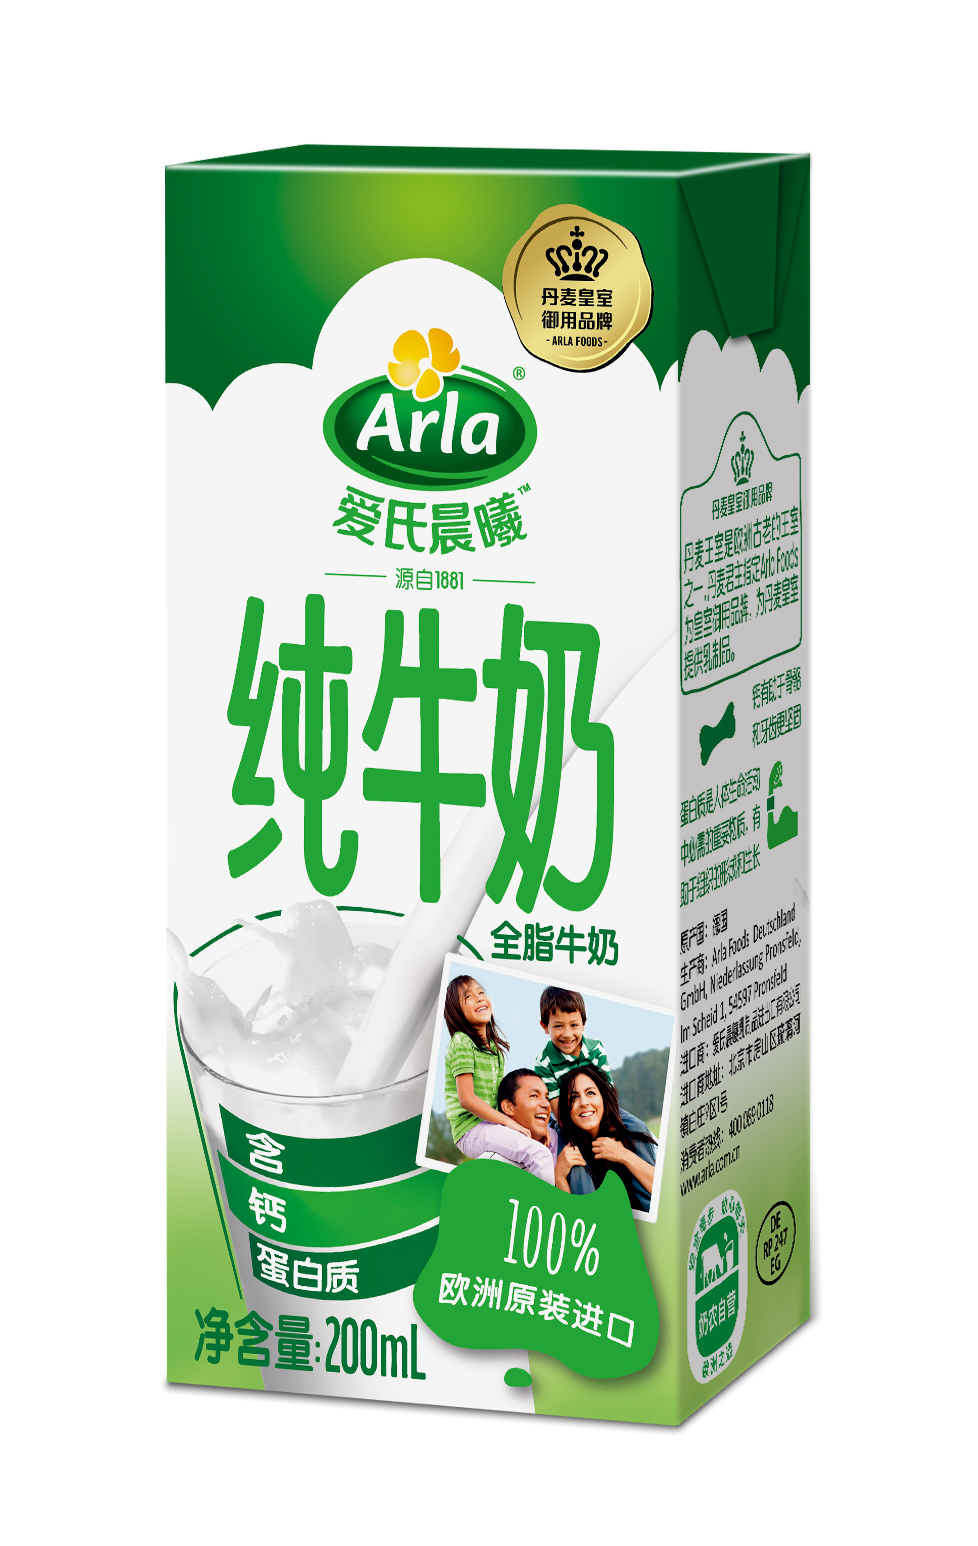 Arla ®爱氏晨曦 ™ 全脂纯牛奶 200毫升